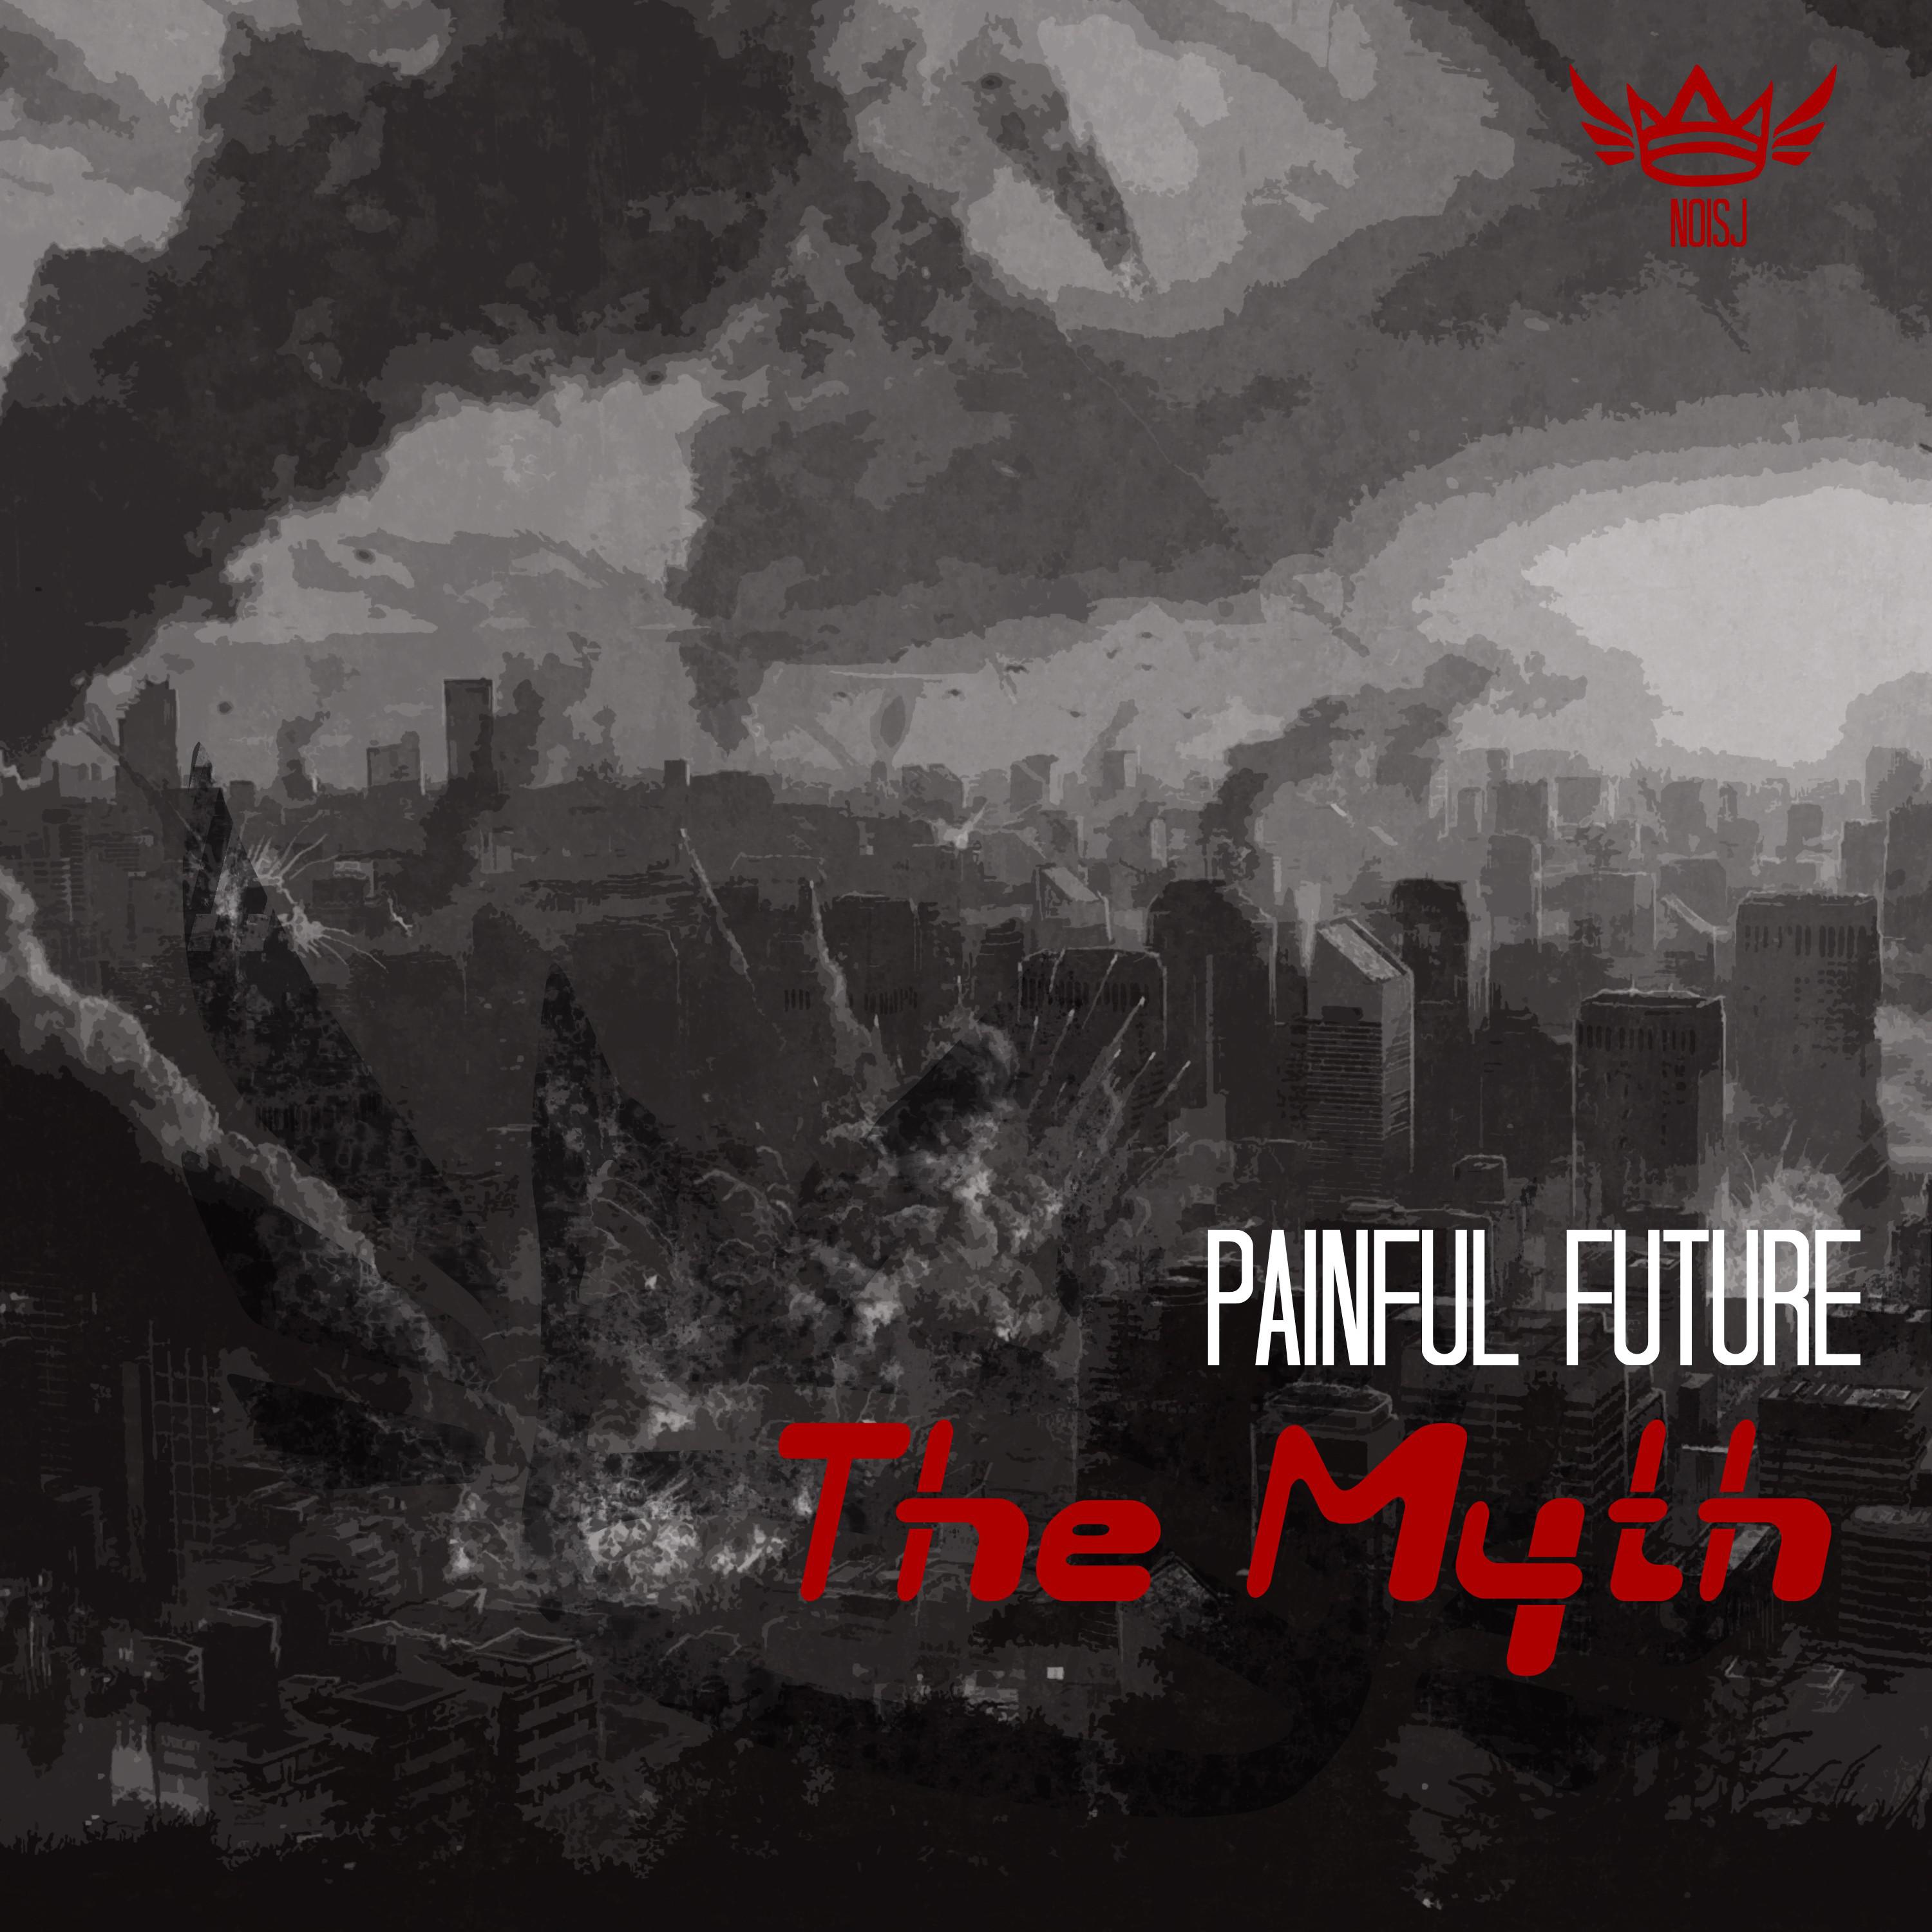 The Myth - The Pain